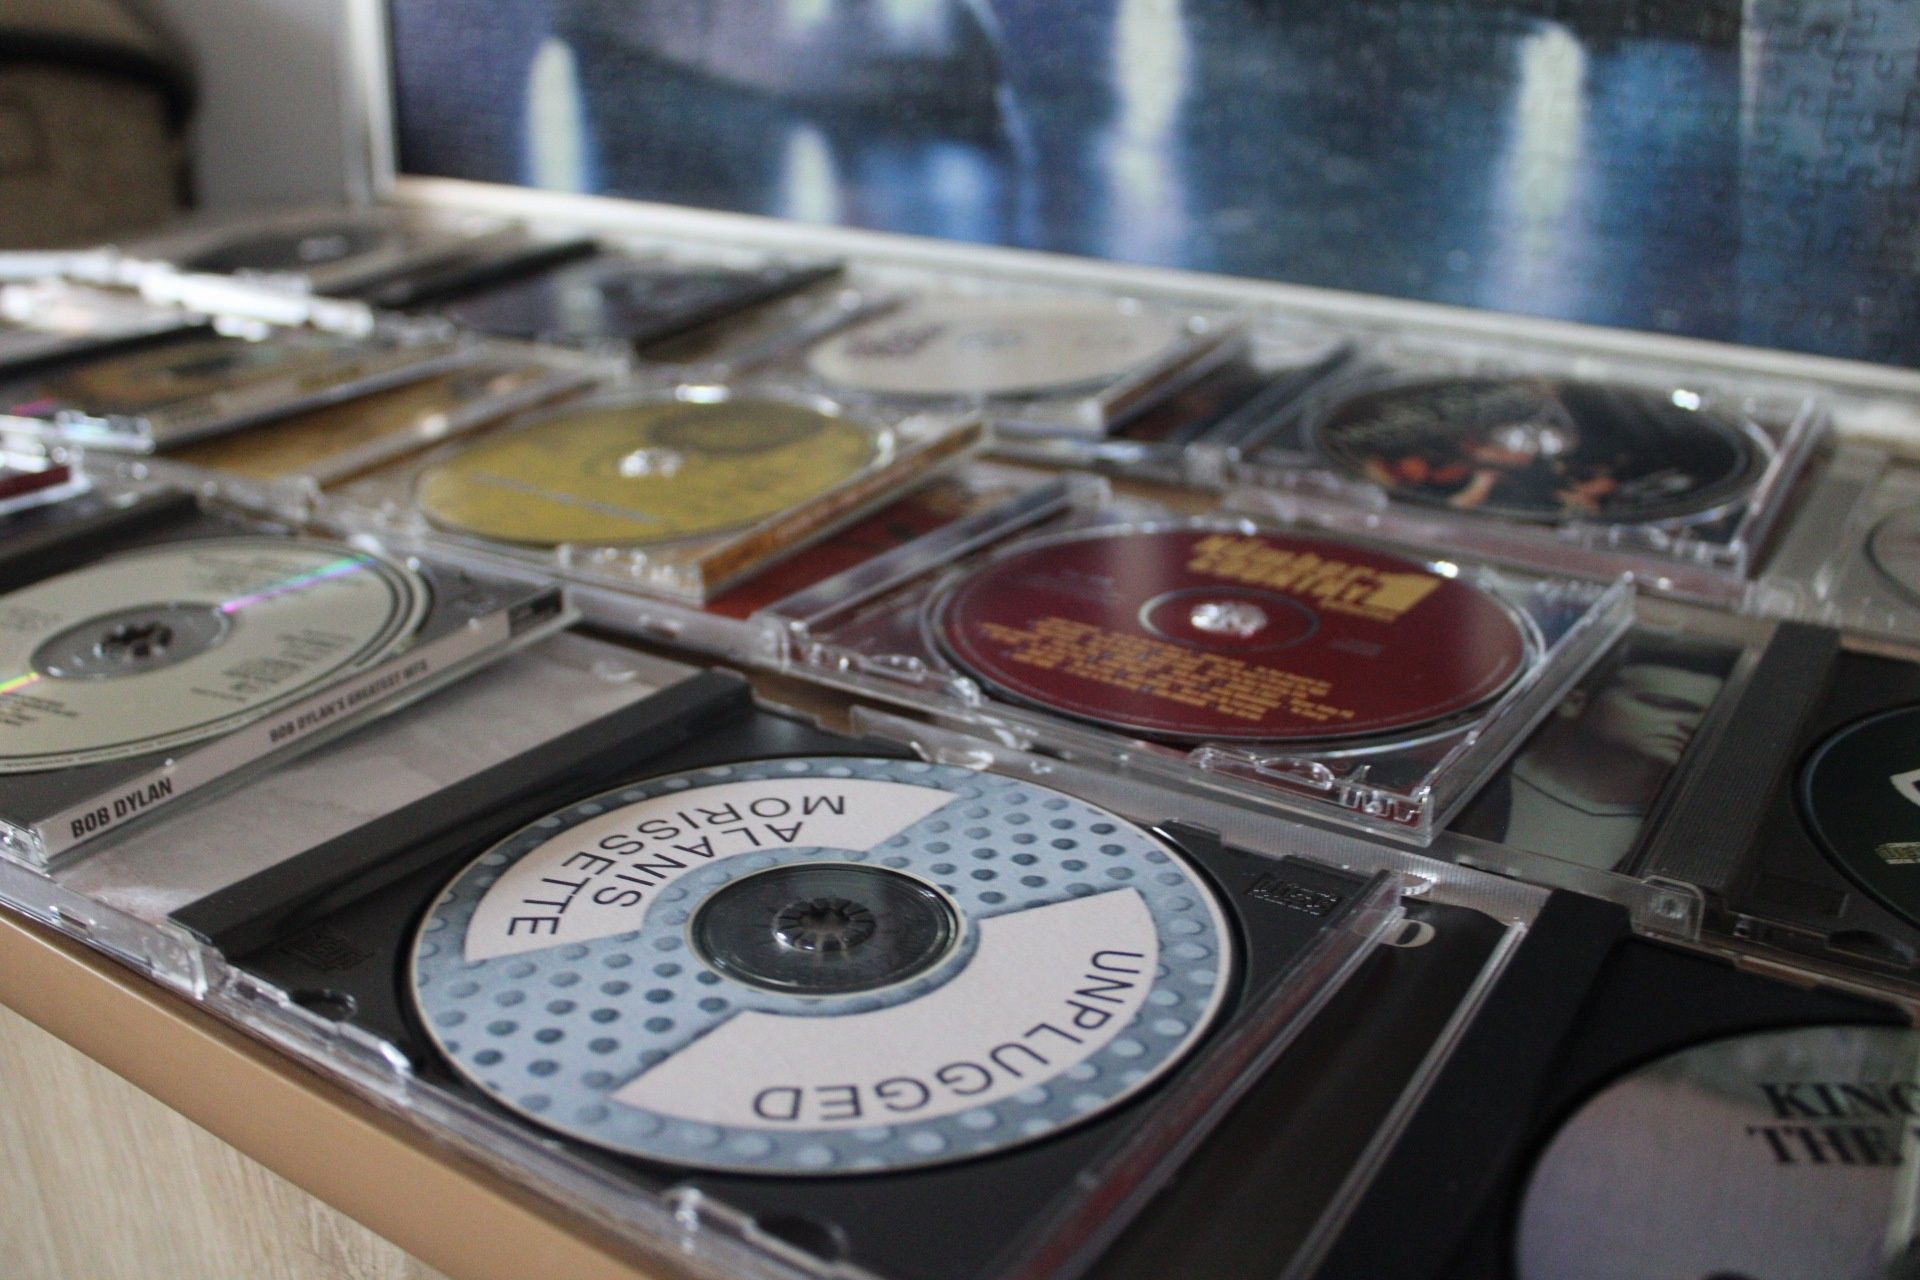 Colecție DVD/CD - filme/ albume muzică (SE POT VINDE SEPARAT)